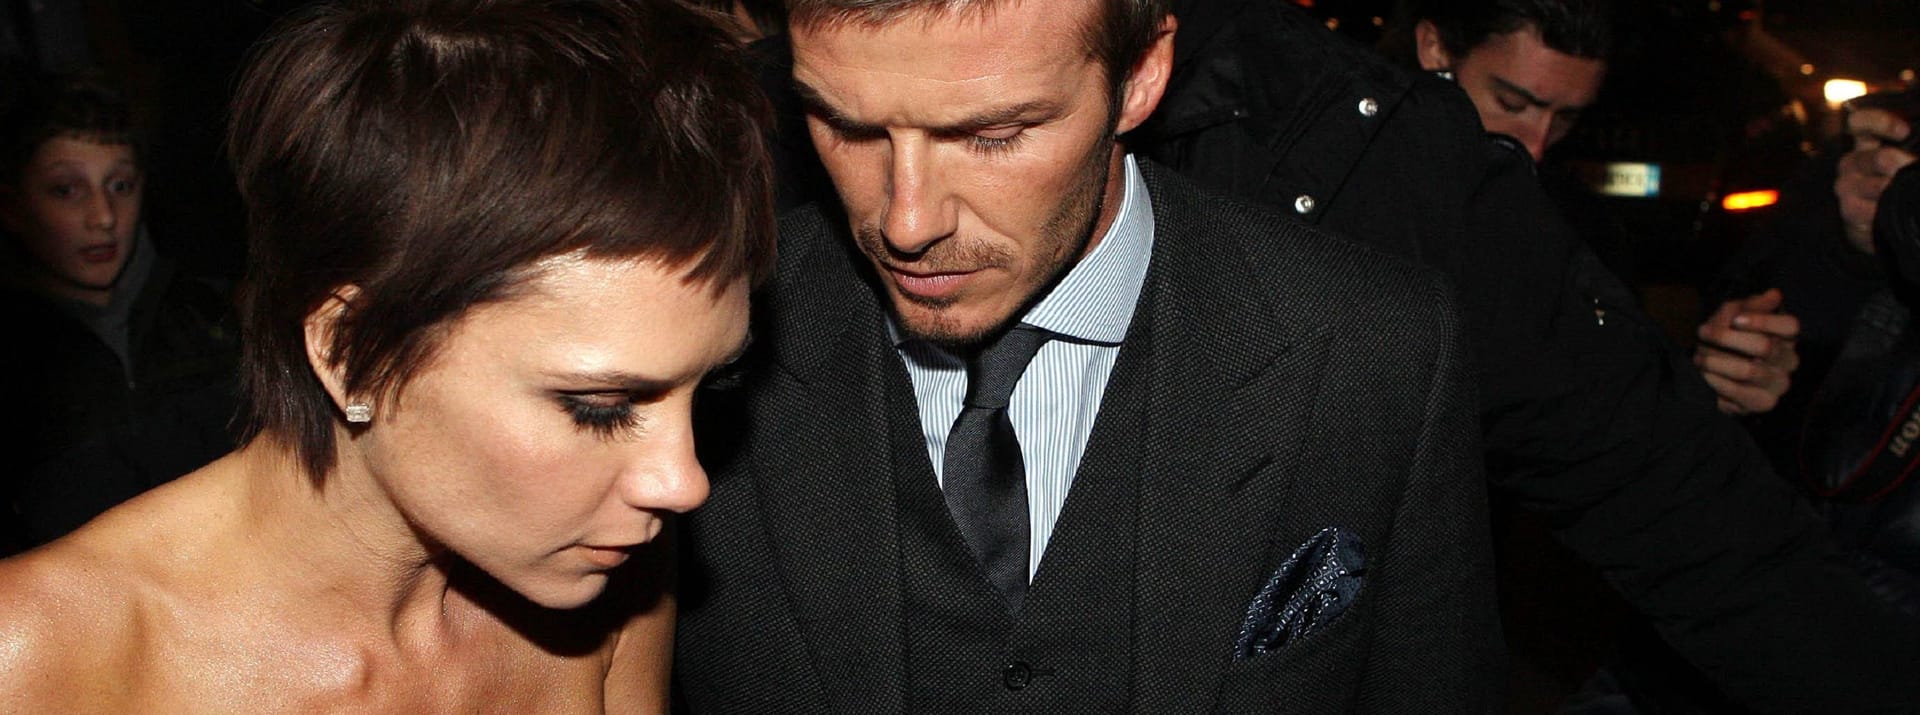 Top gestylt: David Beckham glänzte im Anzug, seine Ehefrau im schulterfreien Kleid mit neuem Pixie.